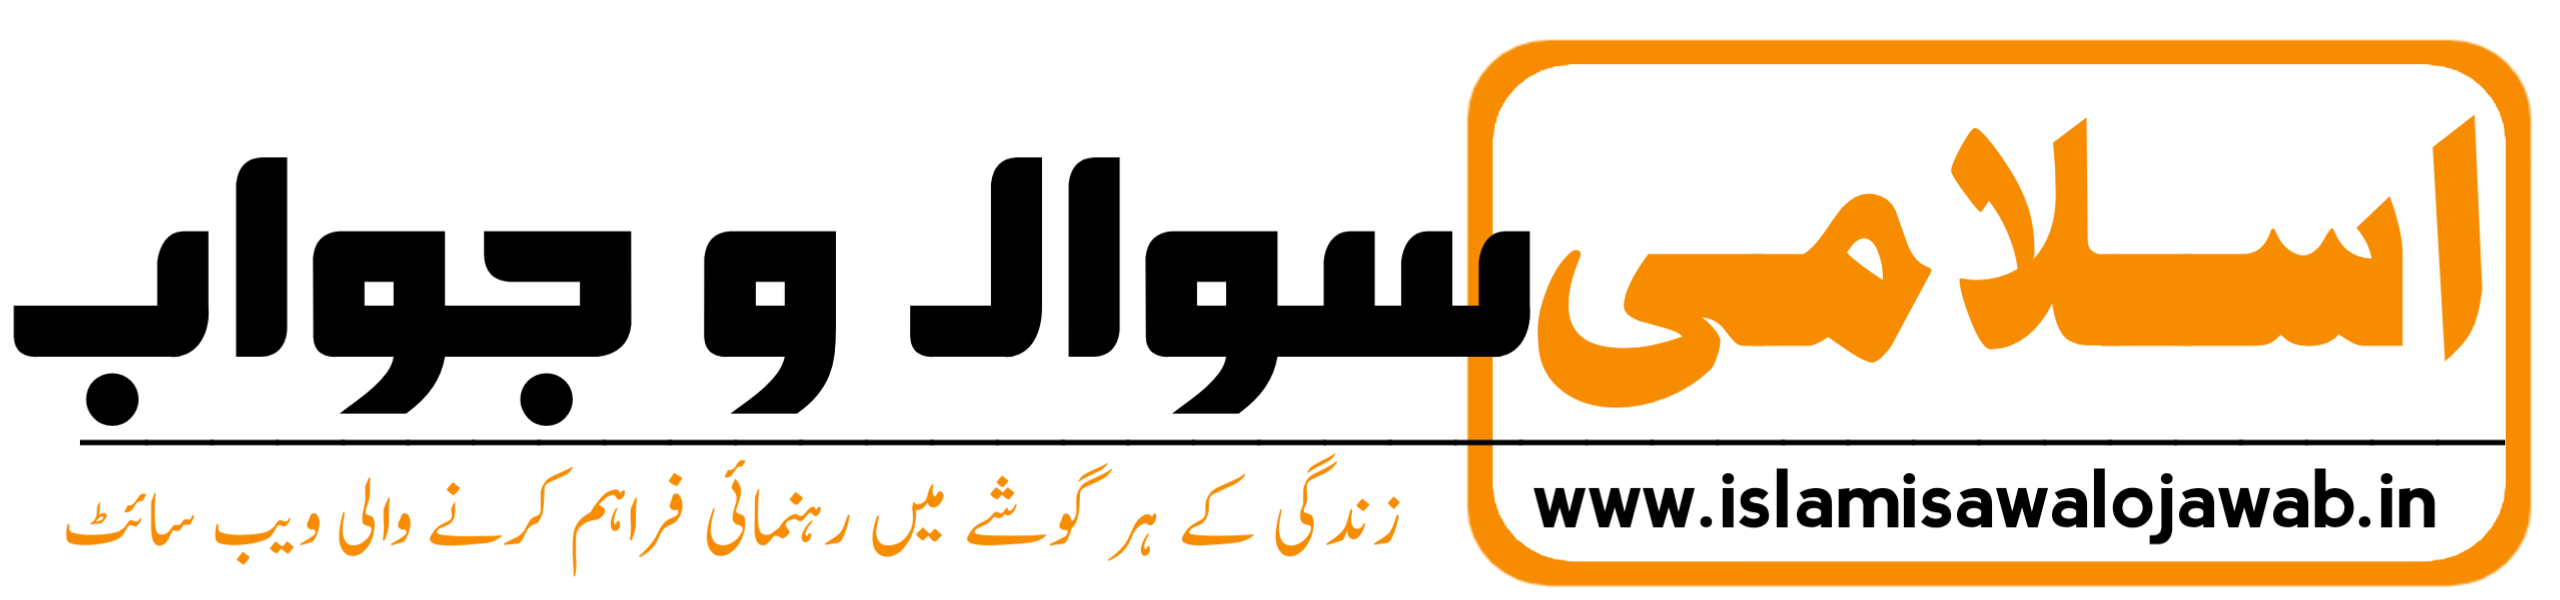 Urdu Sawalo Jawab          اسلامی سوال و جواب/مصباحی مشن